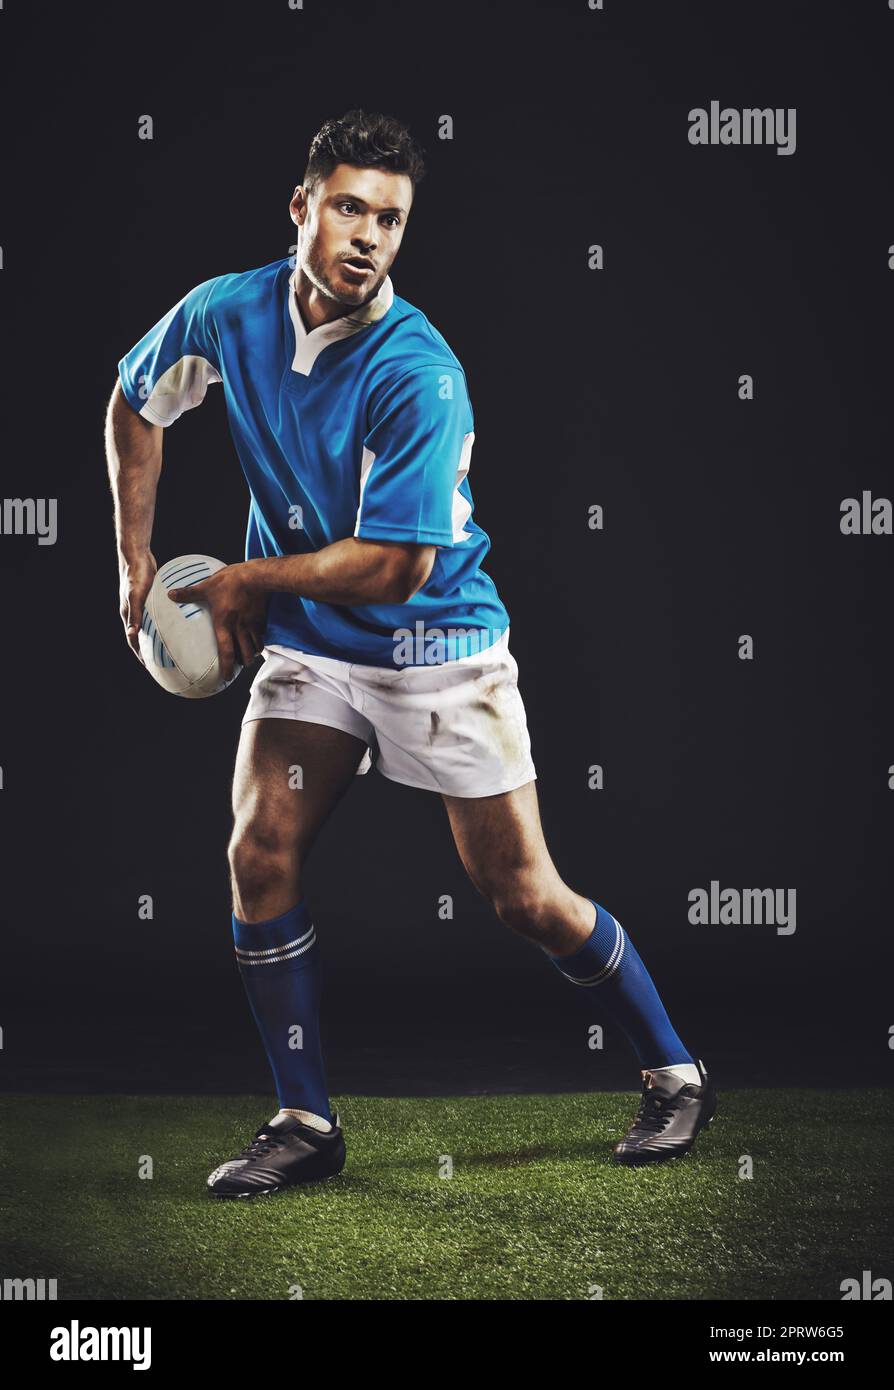 Rugby - es ist ein raues und hartes Spiel. Studioaufnahme eines jungen Rugby-Spielers auf dem Spielfeld in voller Länge. Stockfoto